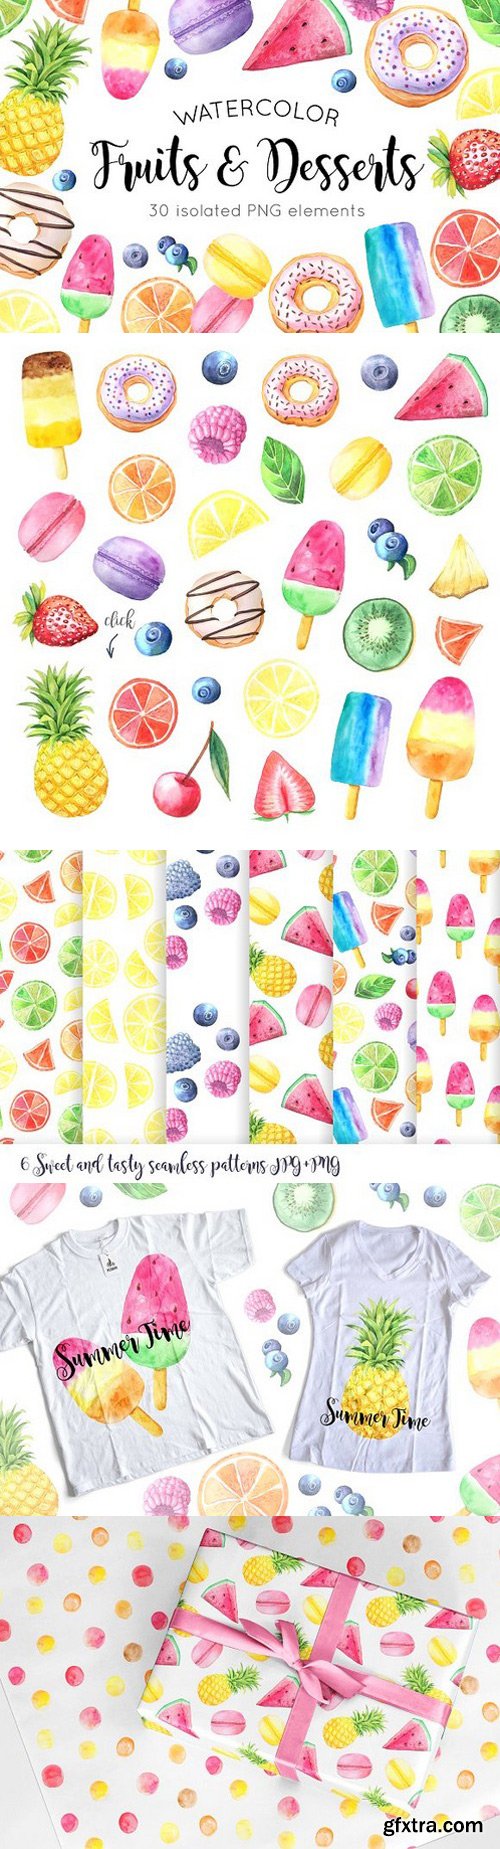 CM - Watercolor Fruits&Desserts Set 1407559